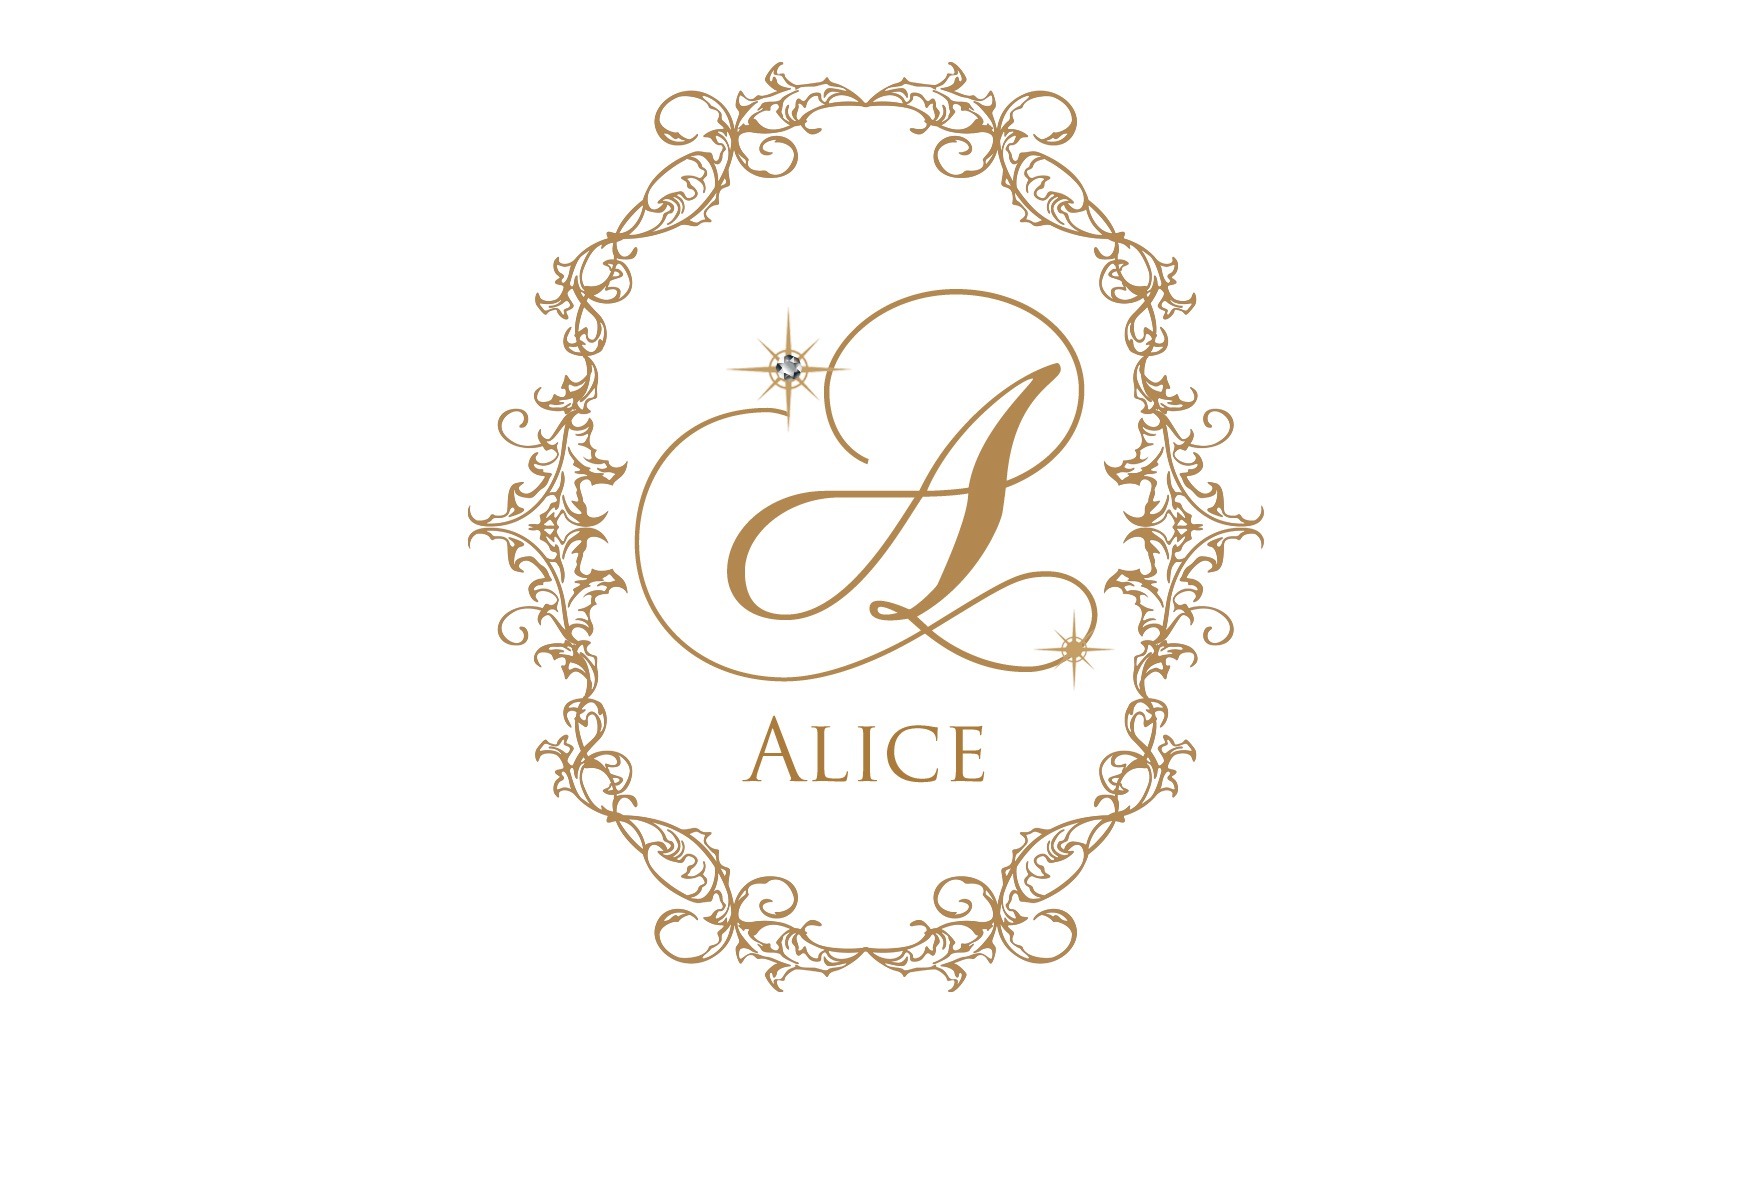 alice shop